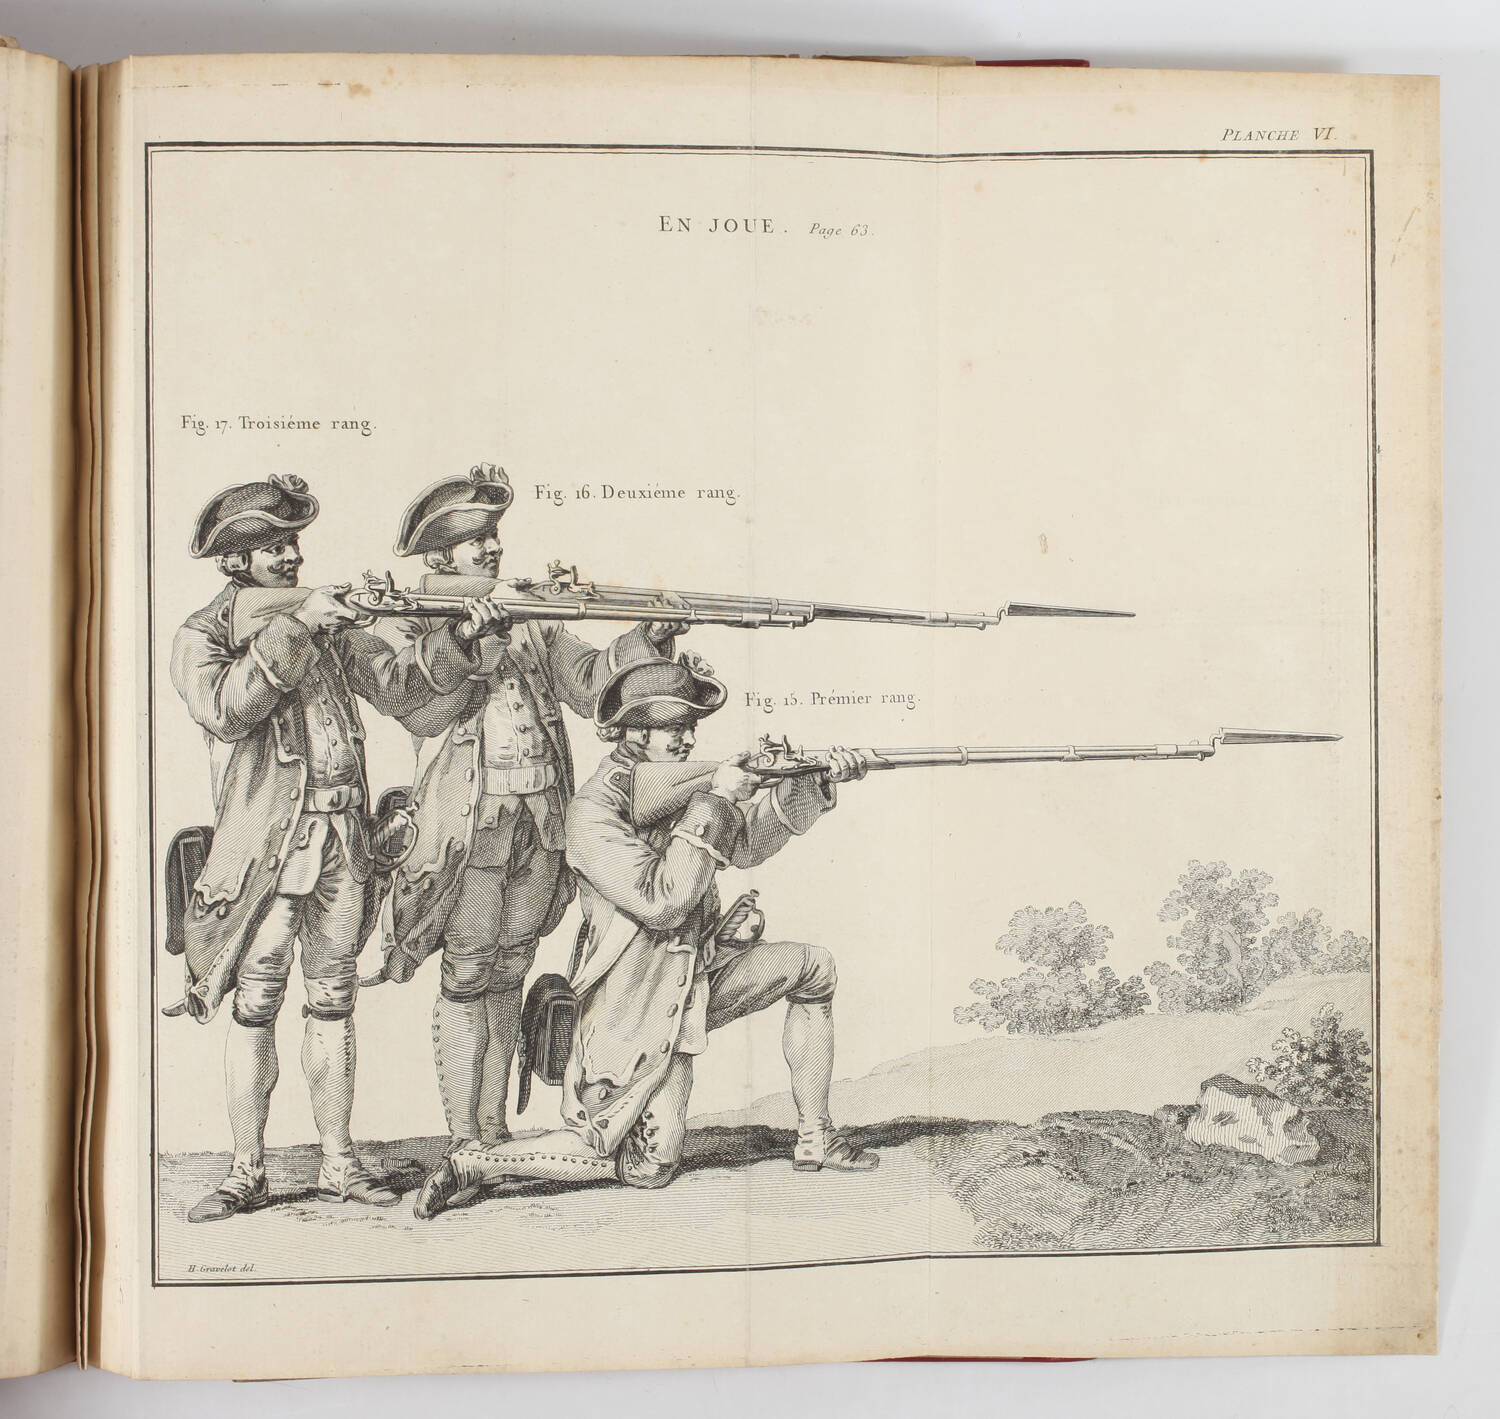 [Militaria] GRAVELOT - Planches des positions des soldats d infanterie - 1766 - Photo 0, livre ancien du XVIIIe siècle